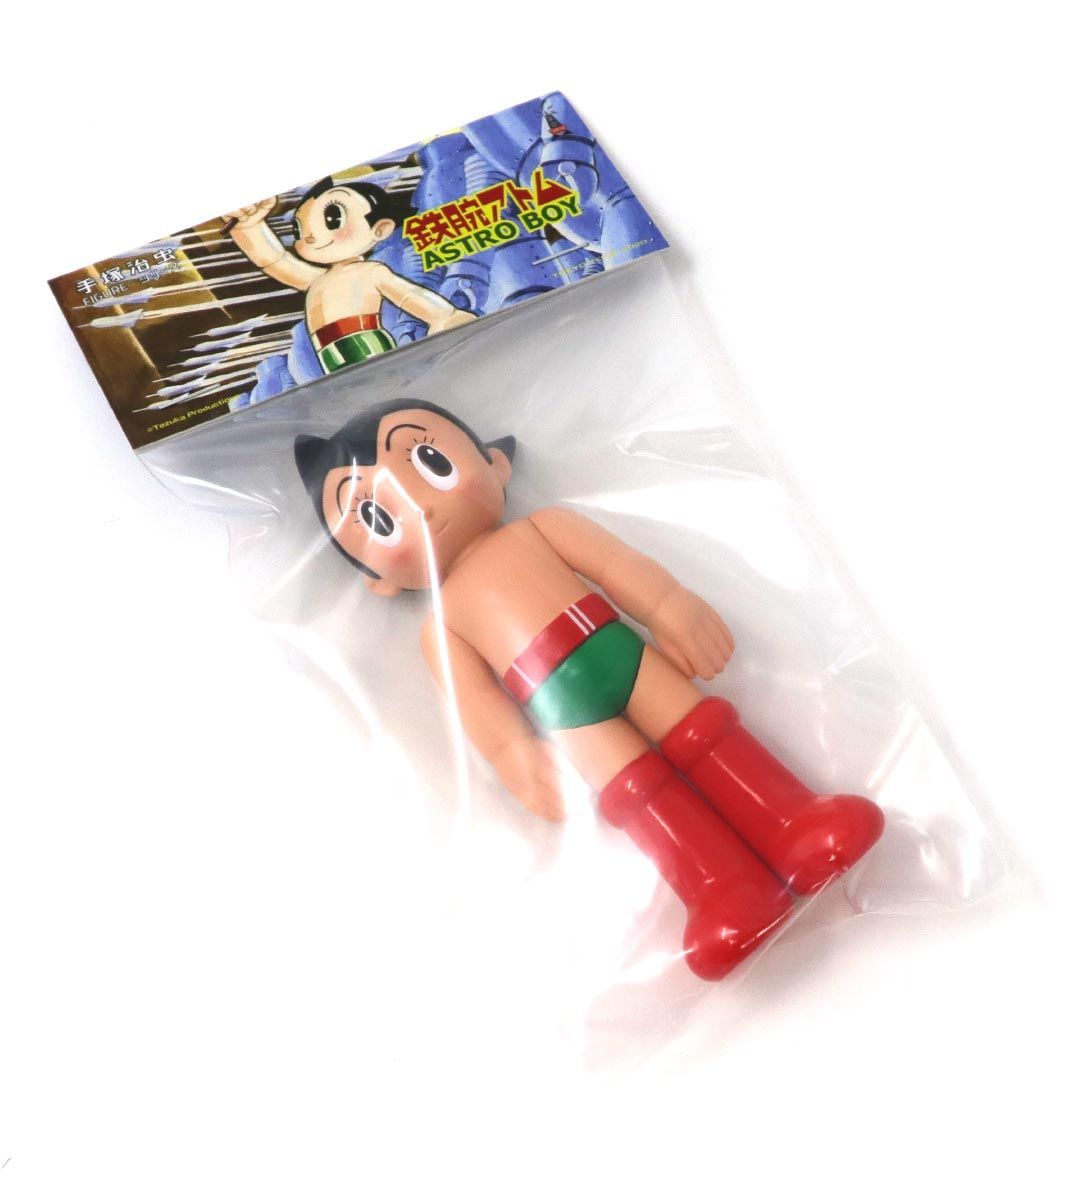 Astro Boy PVC Vintage abrió los ojos hacia.